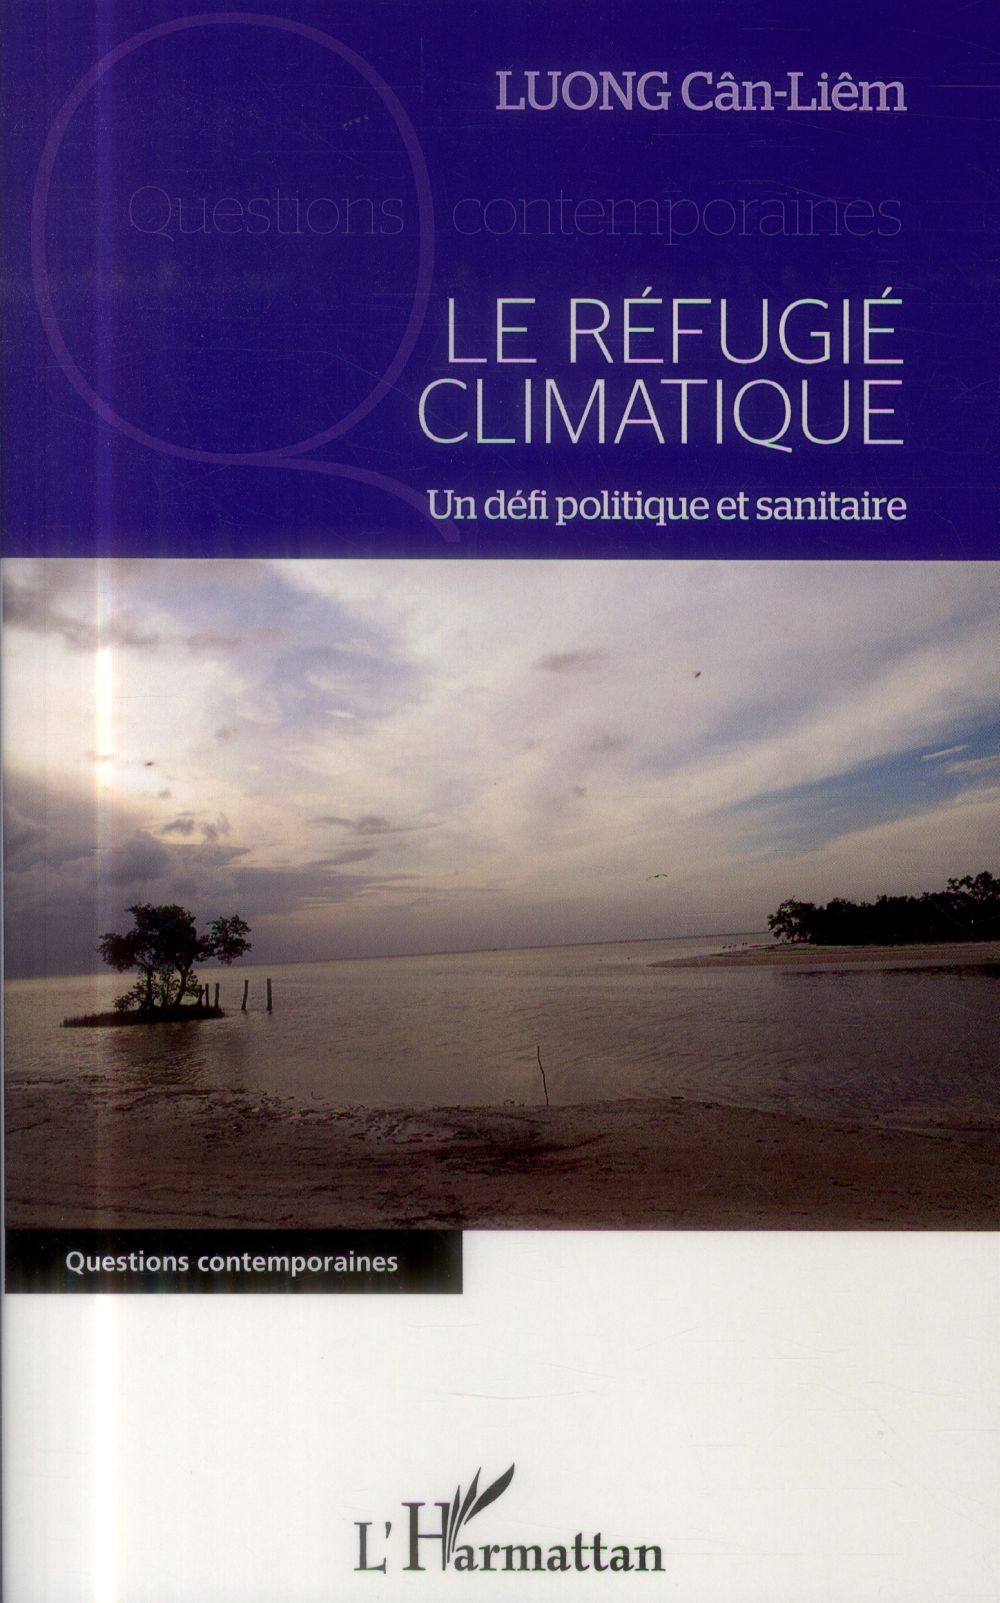 Couverture du livre LE REFUGIE CLIMATIQUE - UN DEFI POLITIQUE ET SANITAIRE